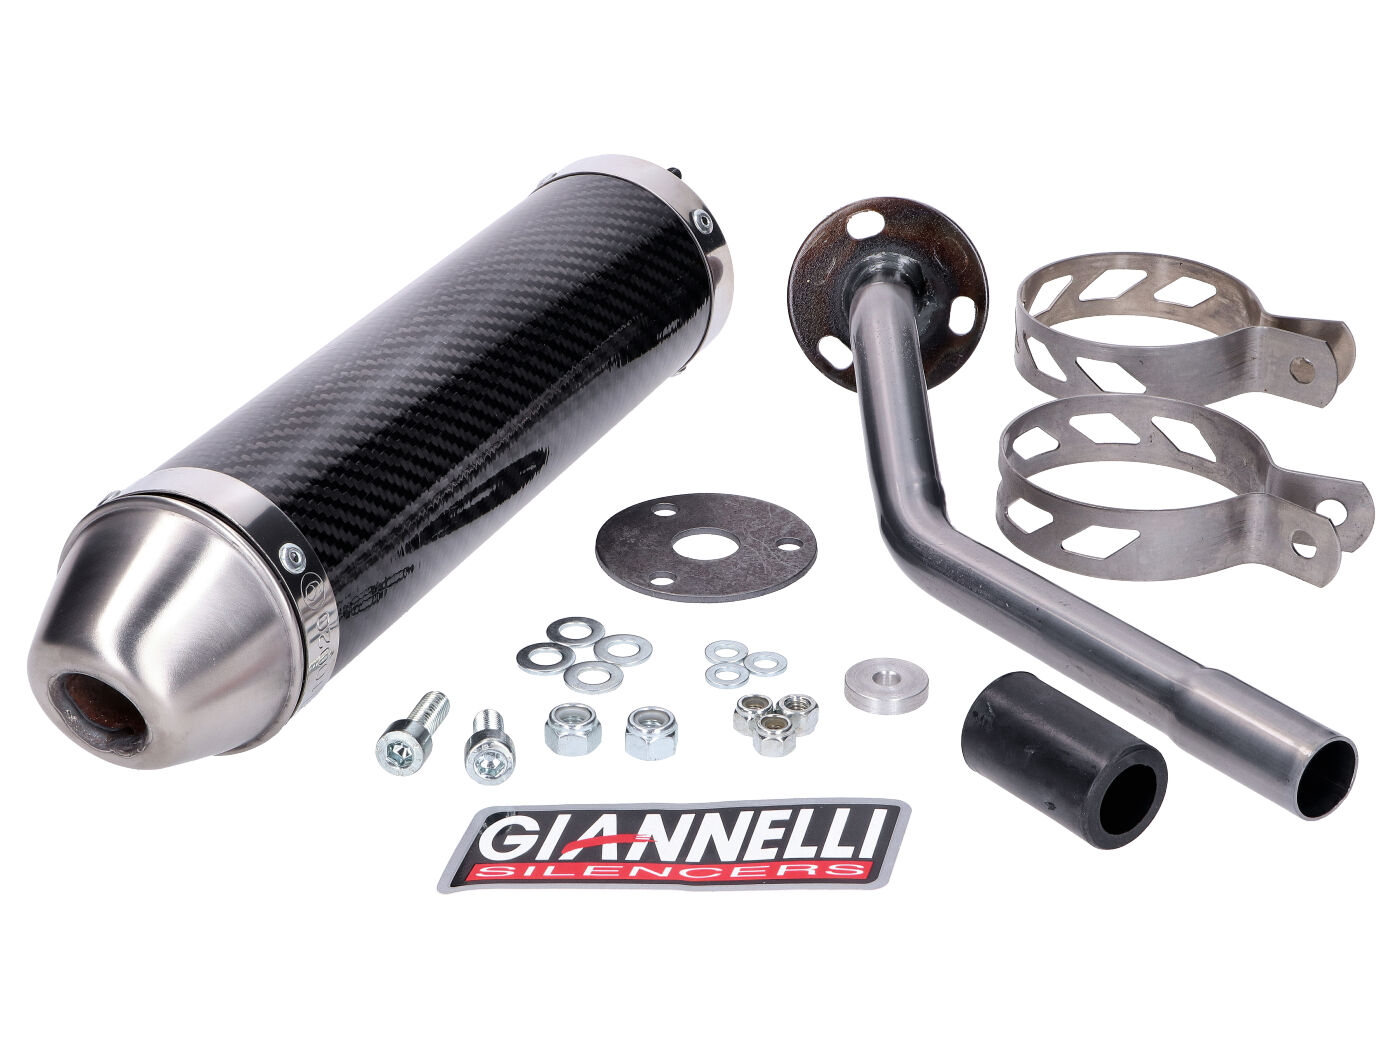 Zadní tlumič Giannelli Carbon pro Fantic Motor 50M, 50MR, 50E, 50ER, 50ES 2T 13-16